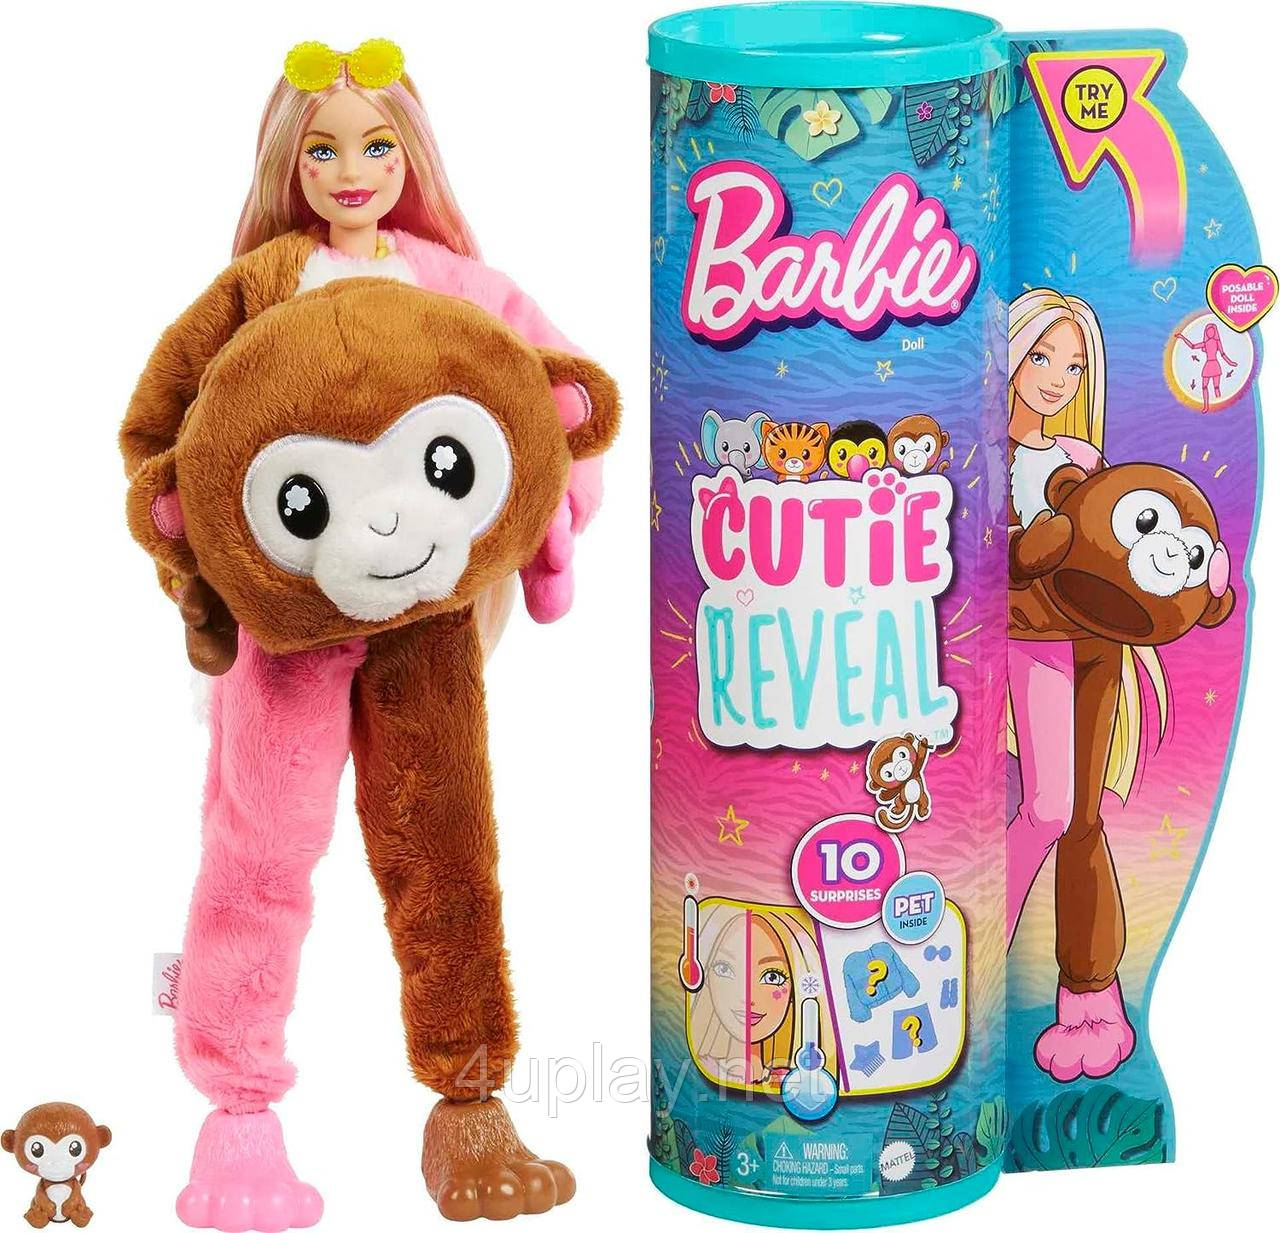 Лялька-сюрприз Barbie Cutie Reveal Monkey Plush Барбі в костюмі, Мавпочка Милашка проявляшка, мартишка Оригінал